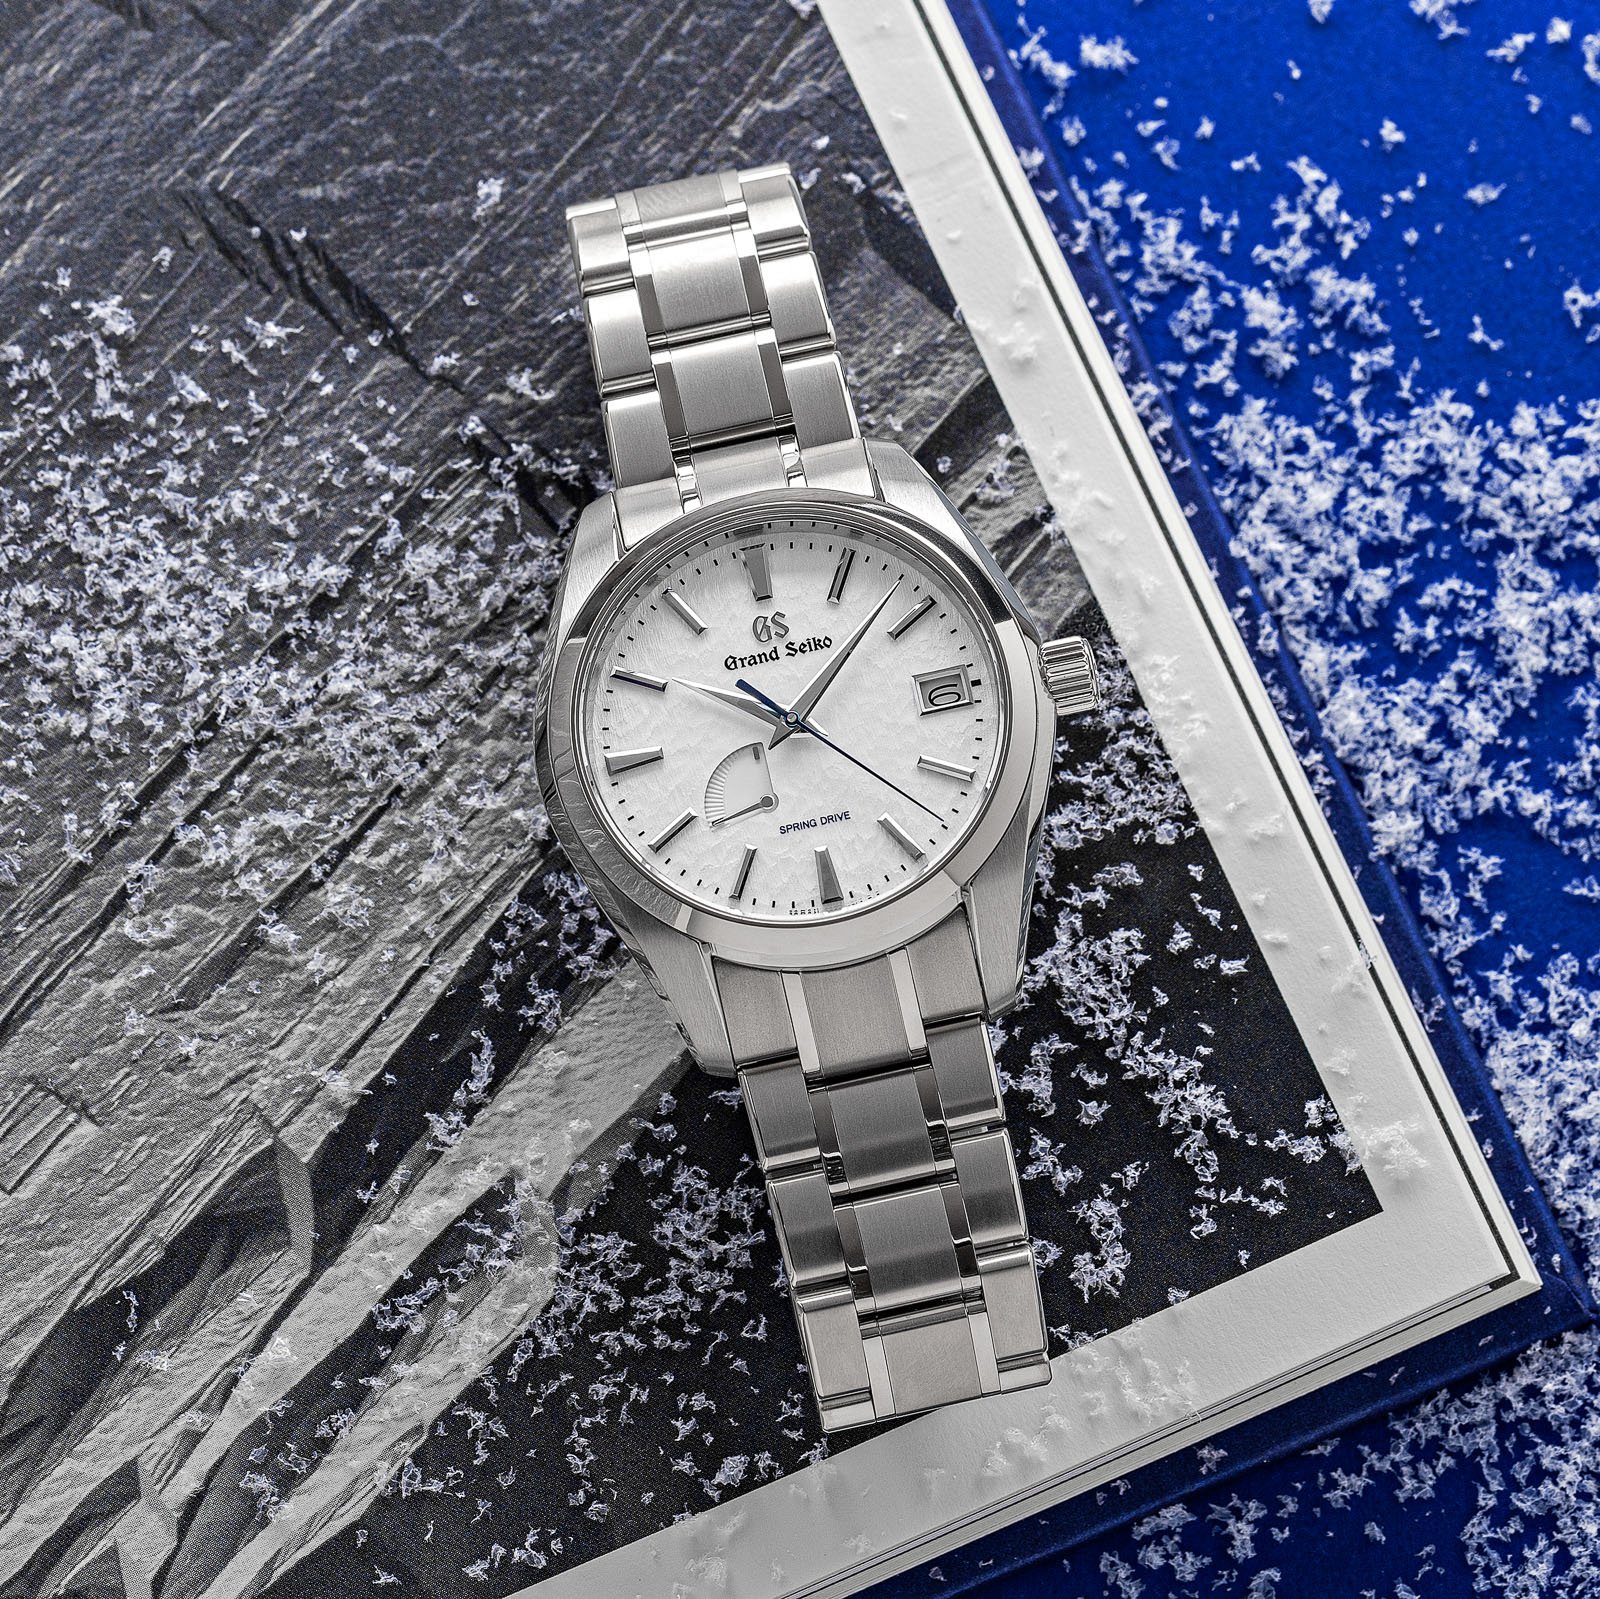 Grand Seiko SBGA211 - titanium wristwatch with a white textured snowflake dial atop a book. 